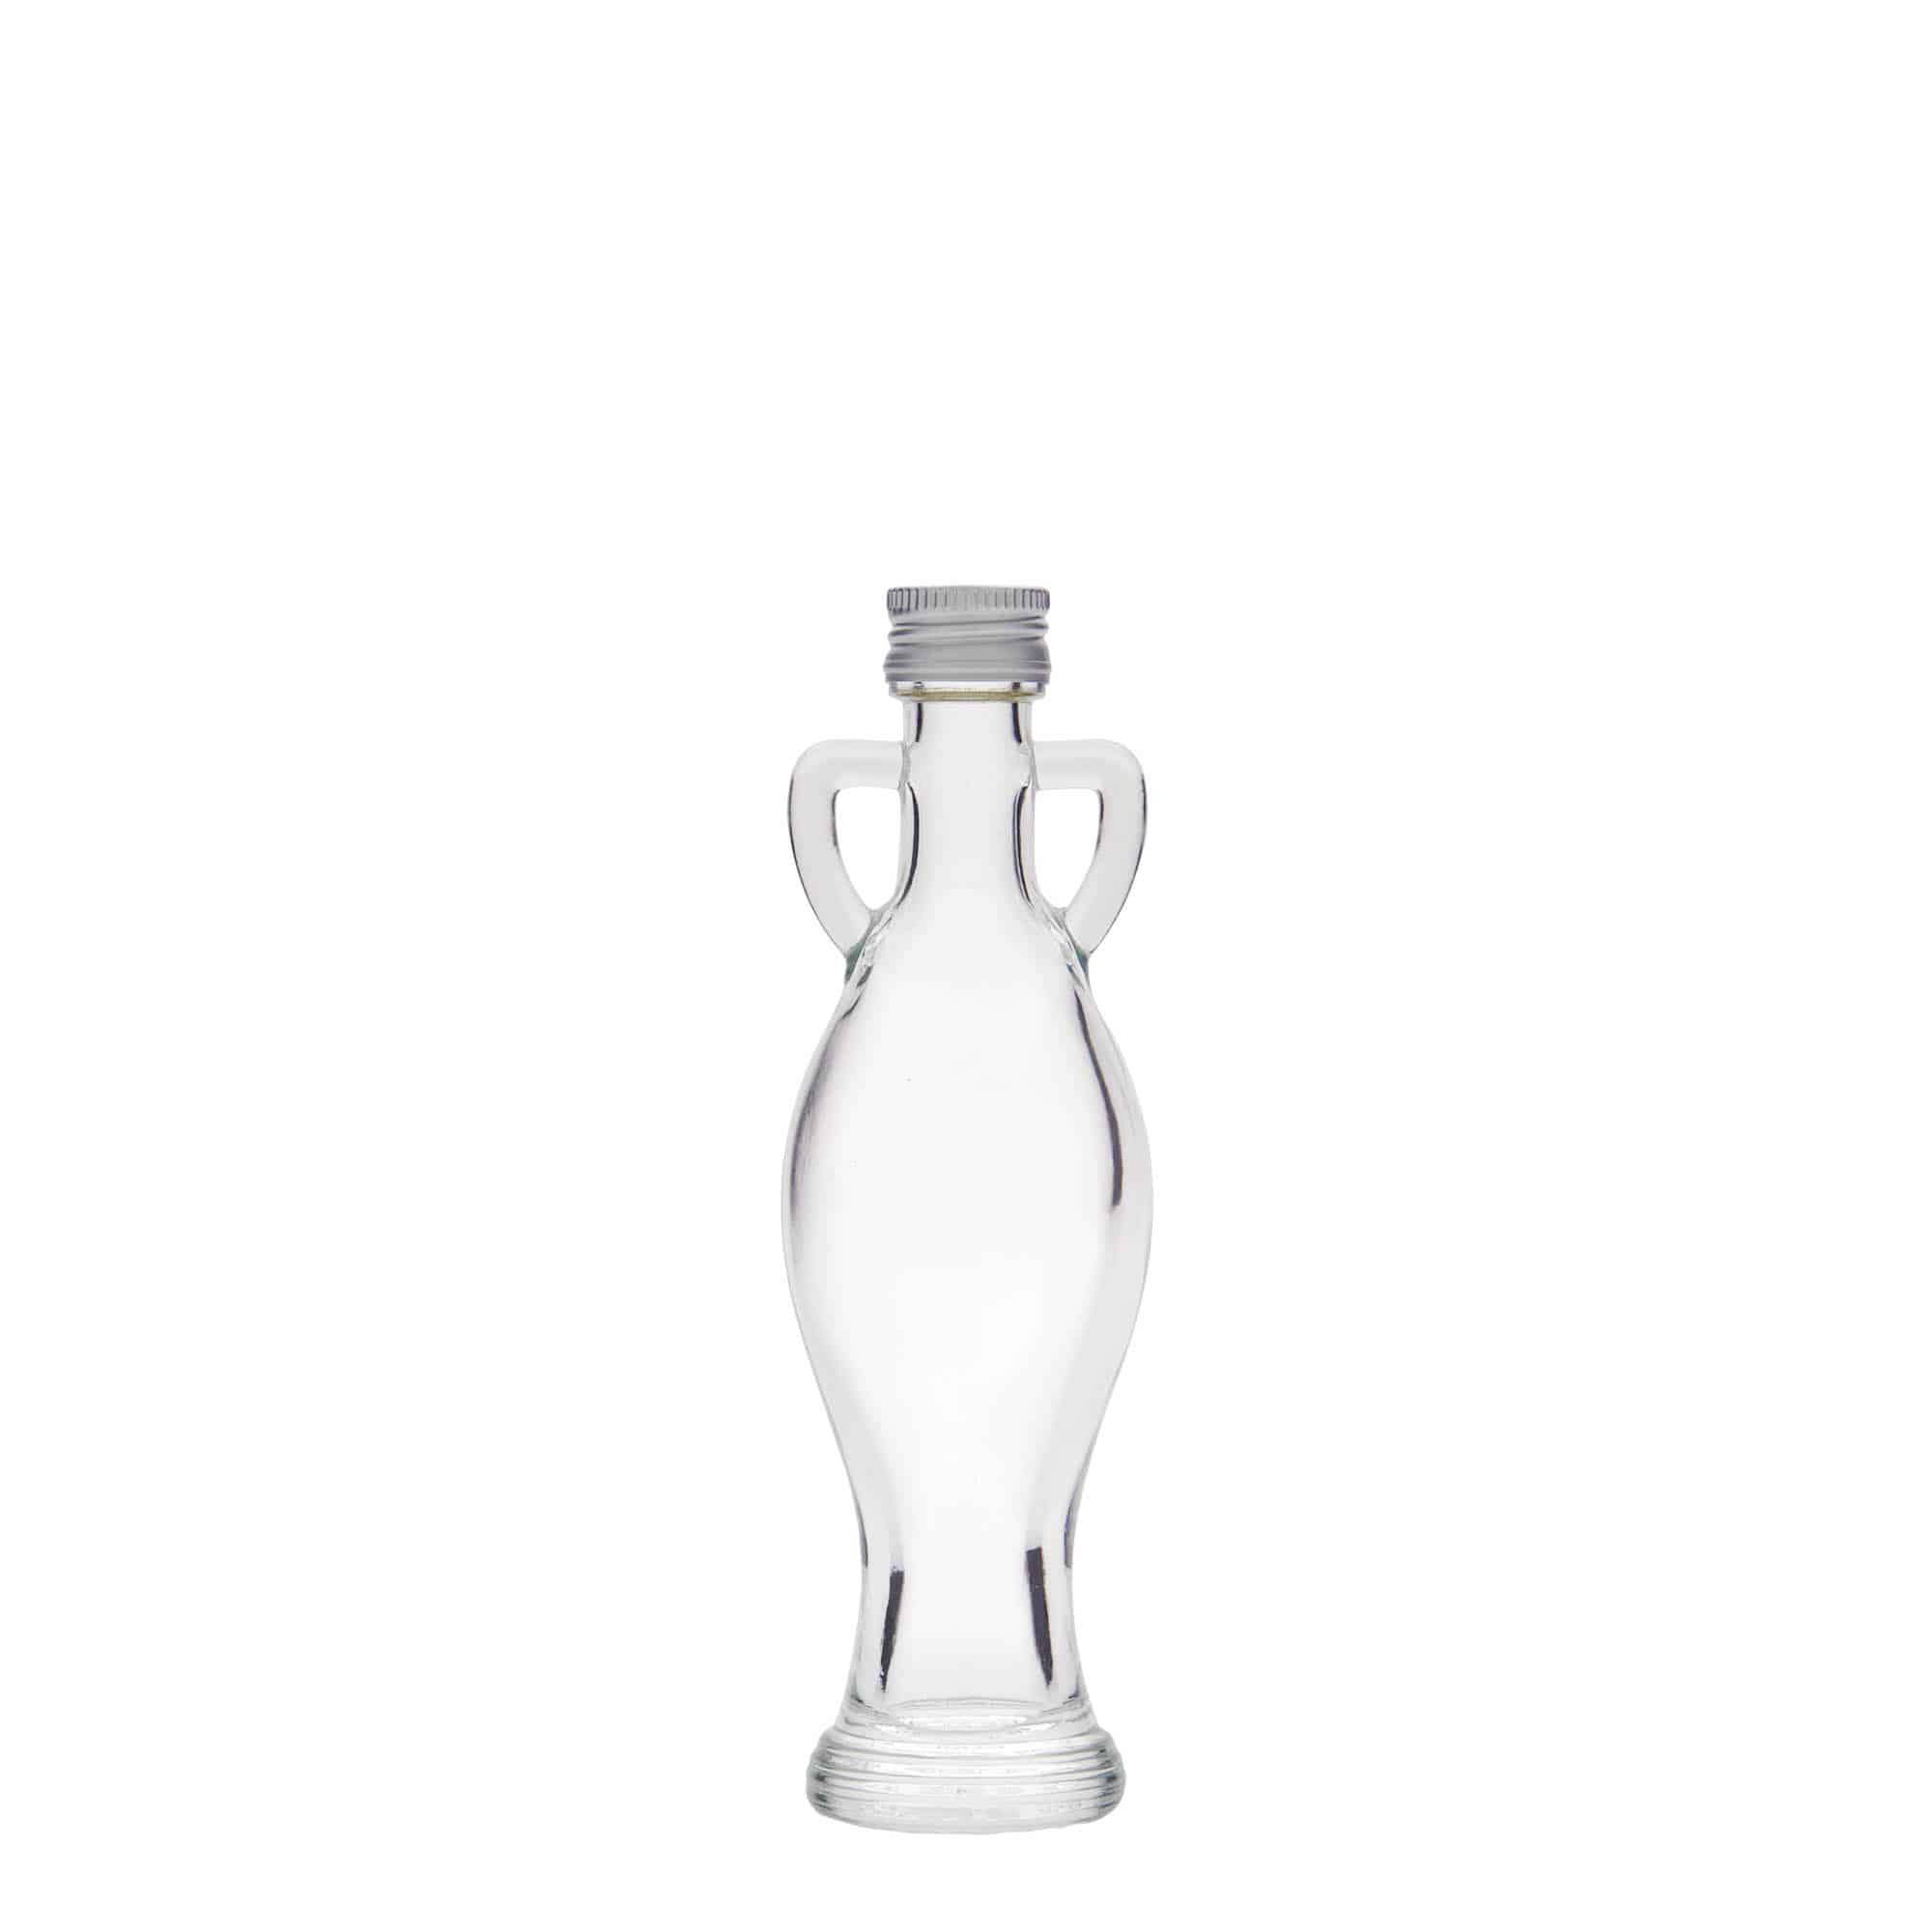 40 ml glass bottle 'Amphore', closure: PP 18